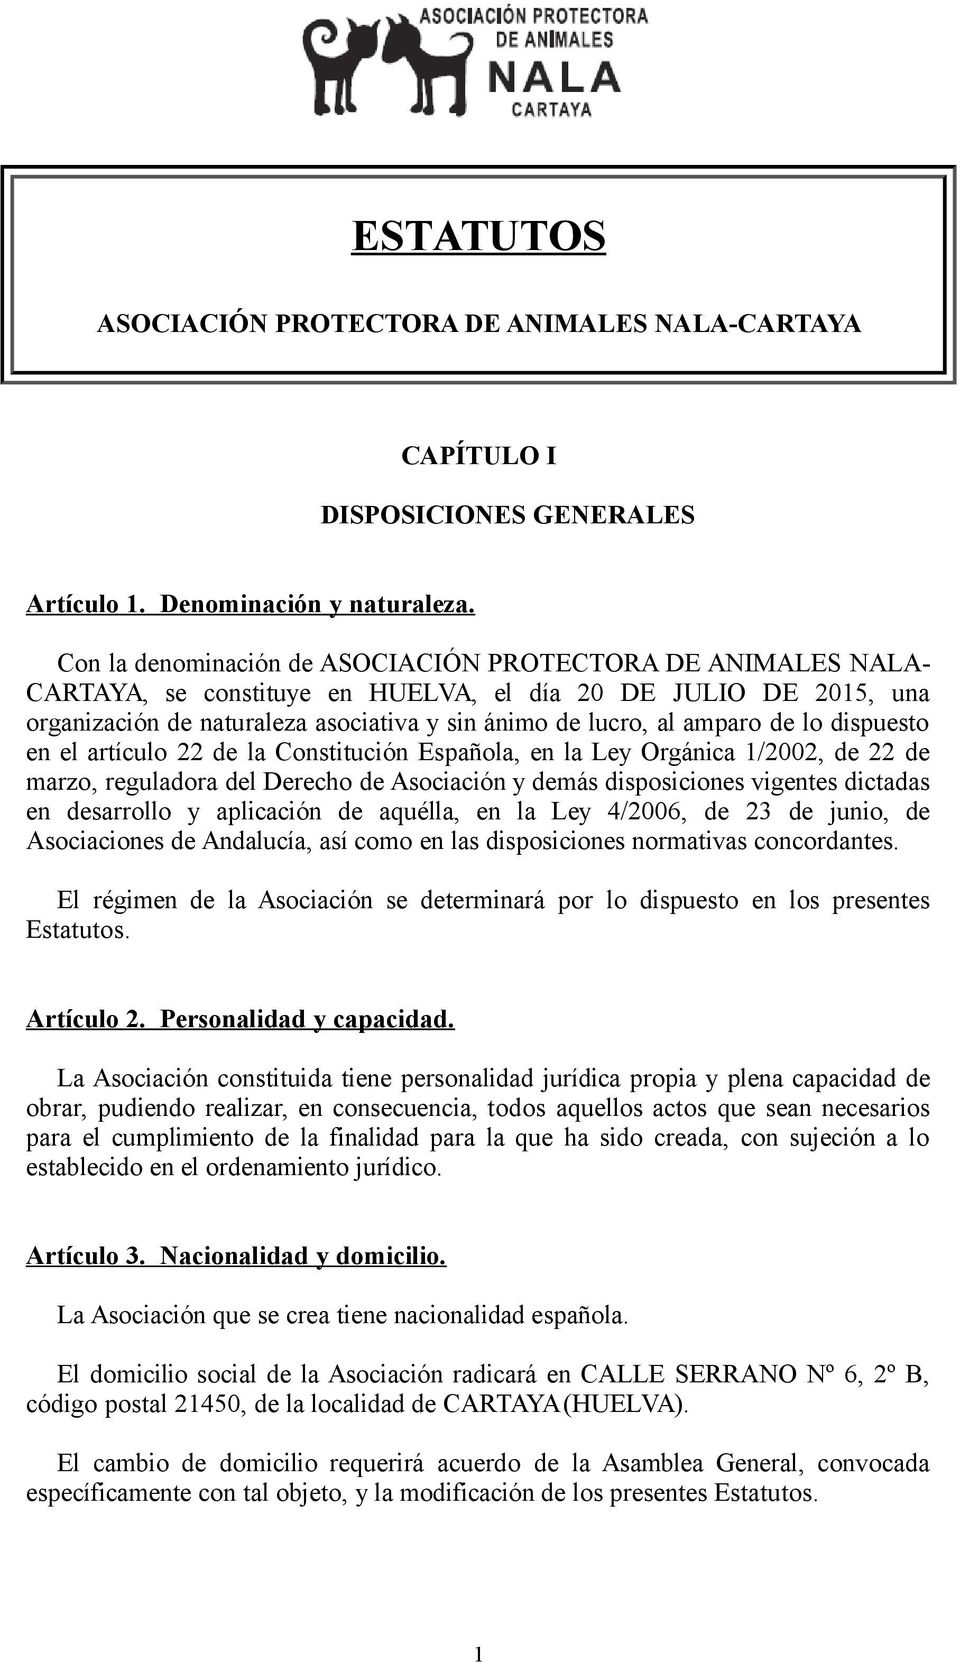 de lo dispuesto en el artículo 22 de la Constitución Española, en la Ley Orgánica 1/2002, de 22 de marzo, reguladora del Derecho de Asociación y demás disposiciones vigentes dictadas en desarrollo y